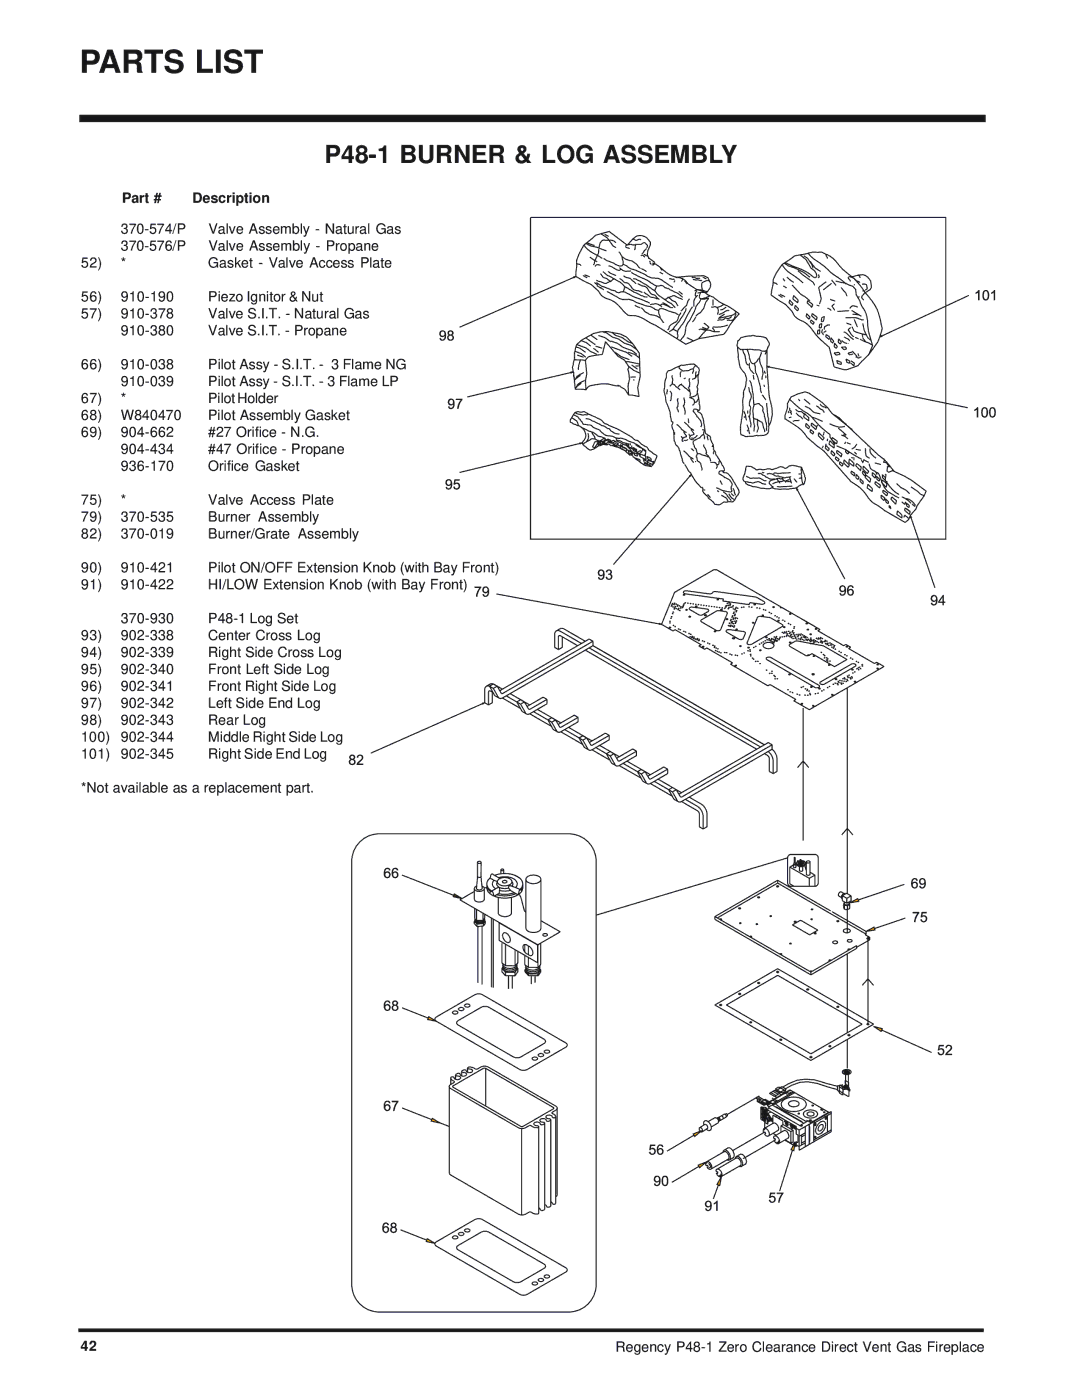 Regency installation manual P48-1 Burner & LOG Assembly 